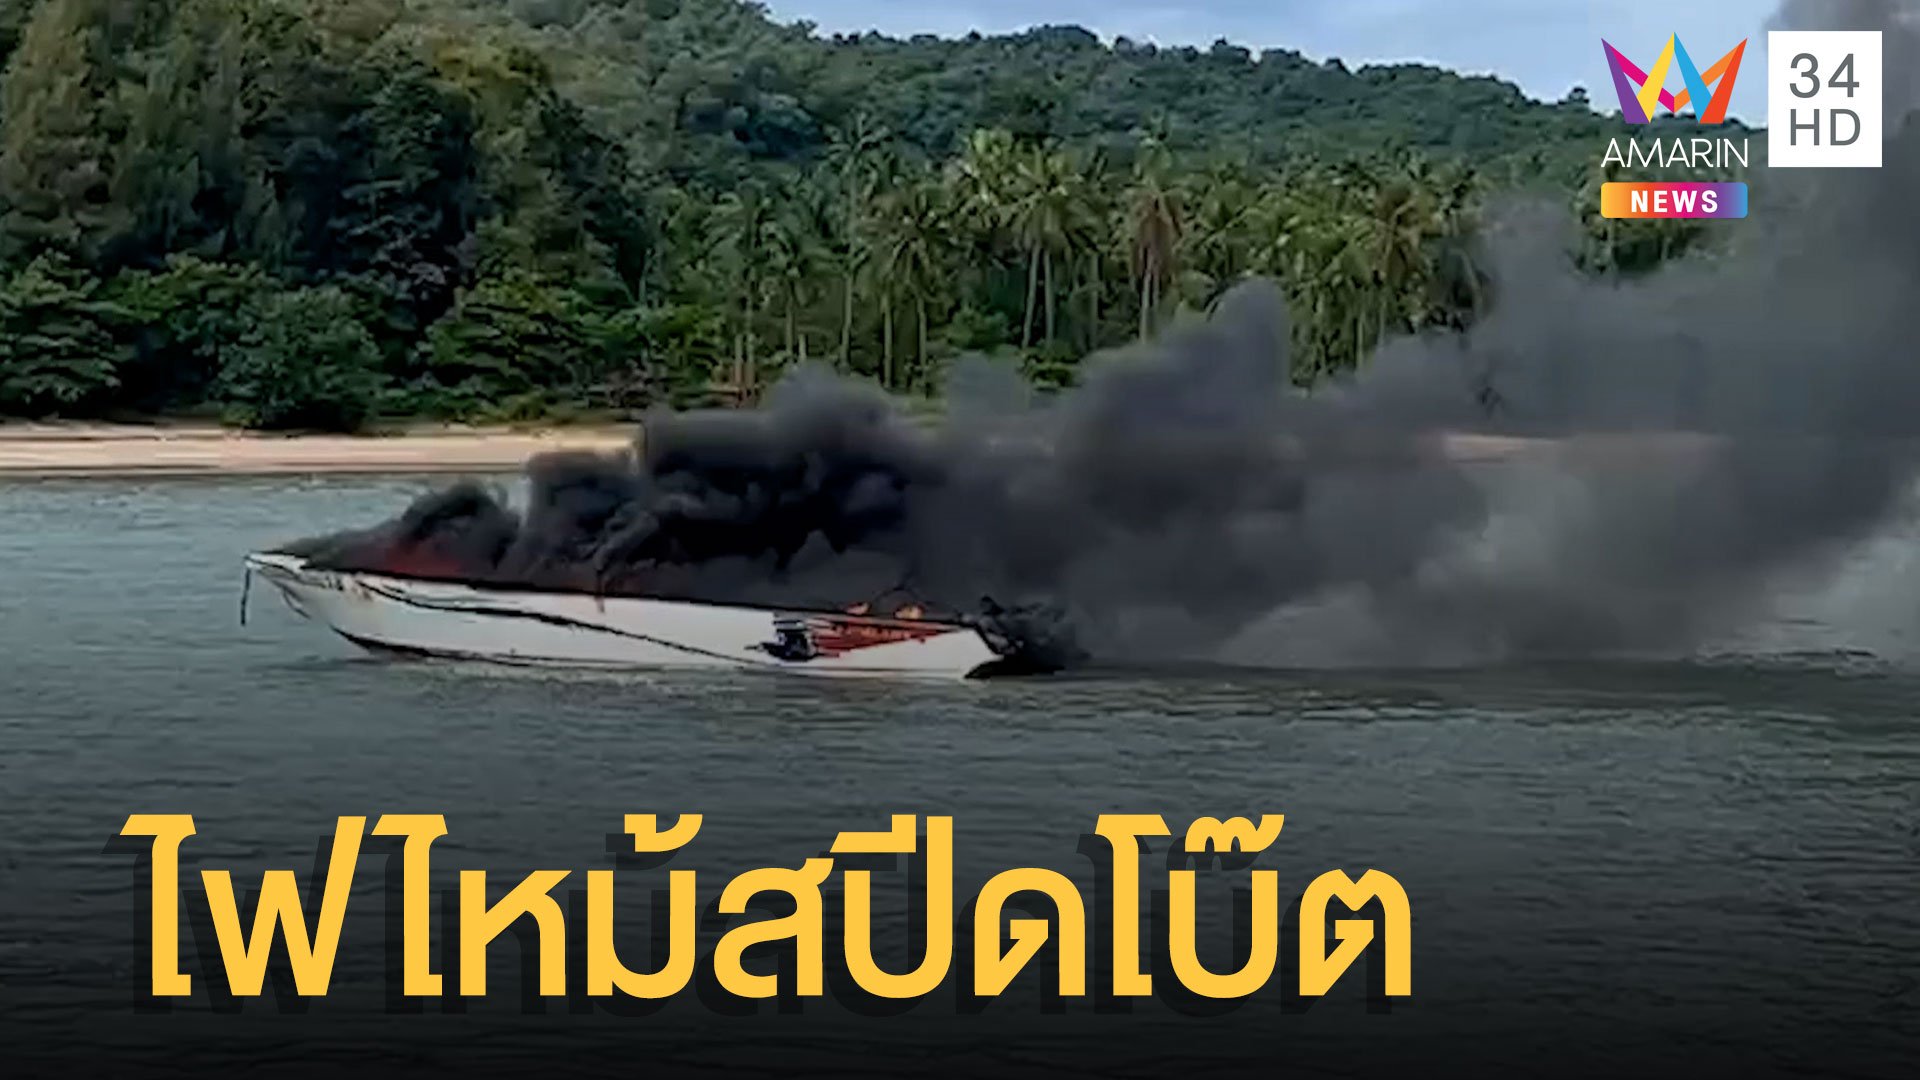 ไฟไหม้เรือสปีดโบ๊ตกลางทะเลเมืองชุมพร นทท. 21 รายโดดหนีลงน้ำ | ข่าวอรุณอมรินทร์ | 21 ก.ค. 65 | AMARIN TVHD34